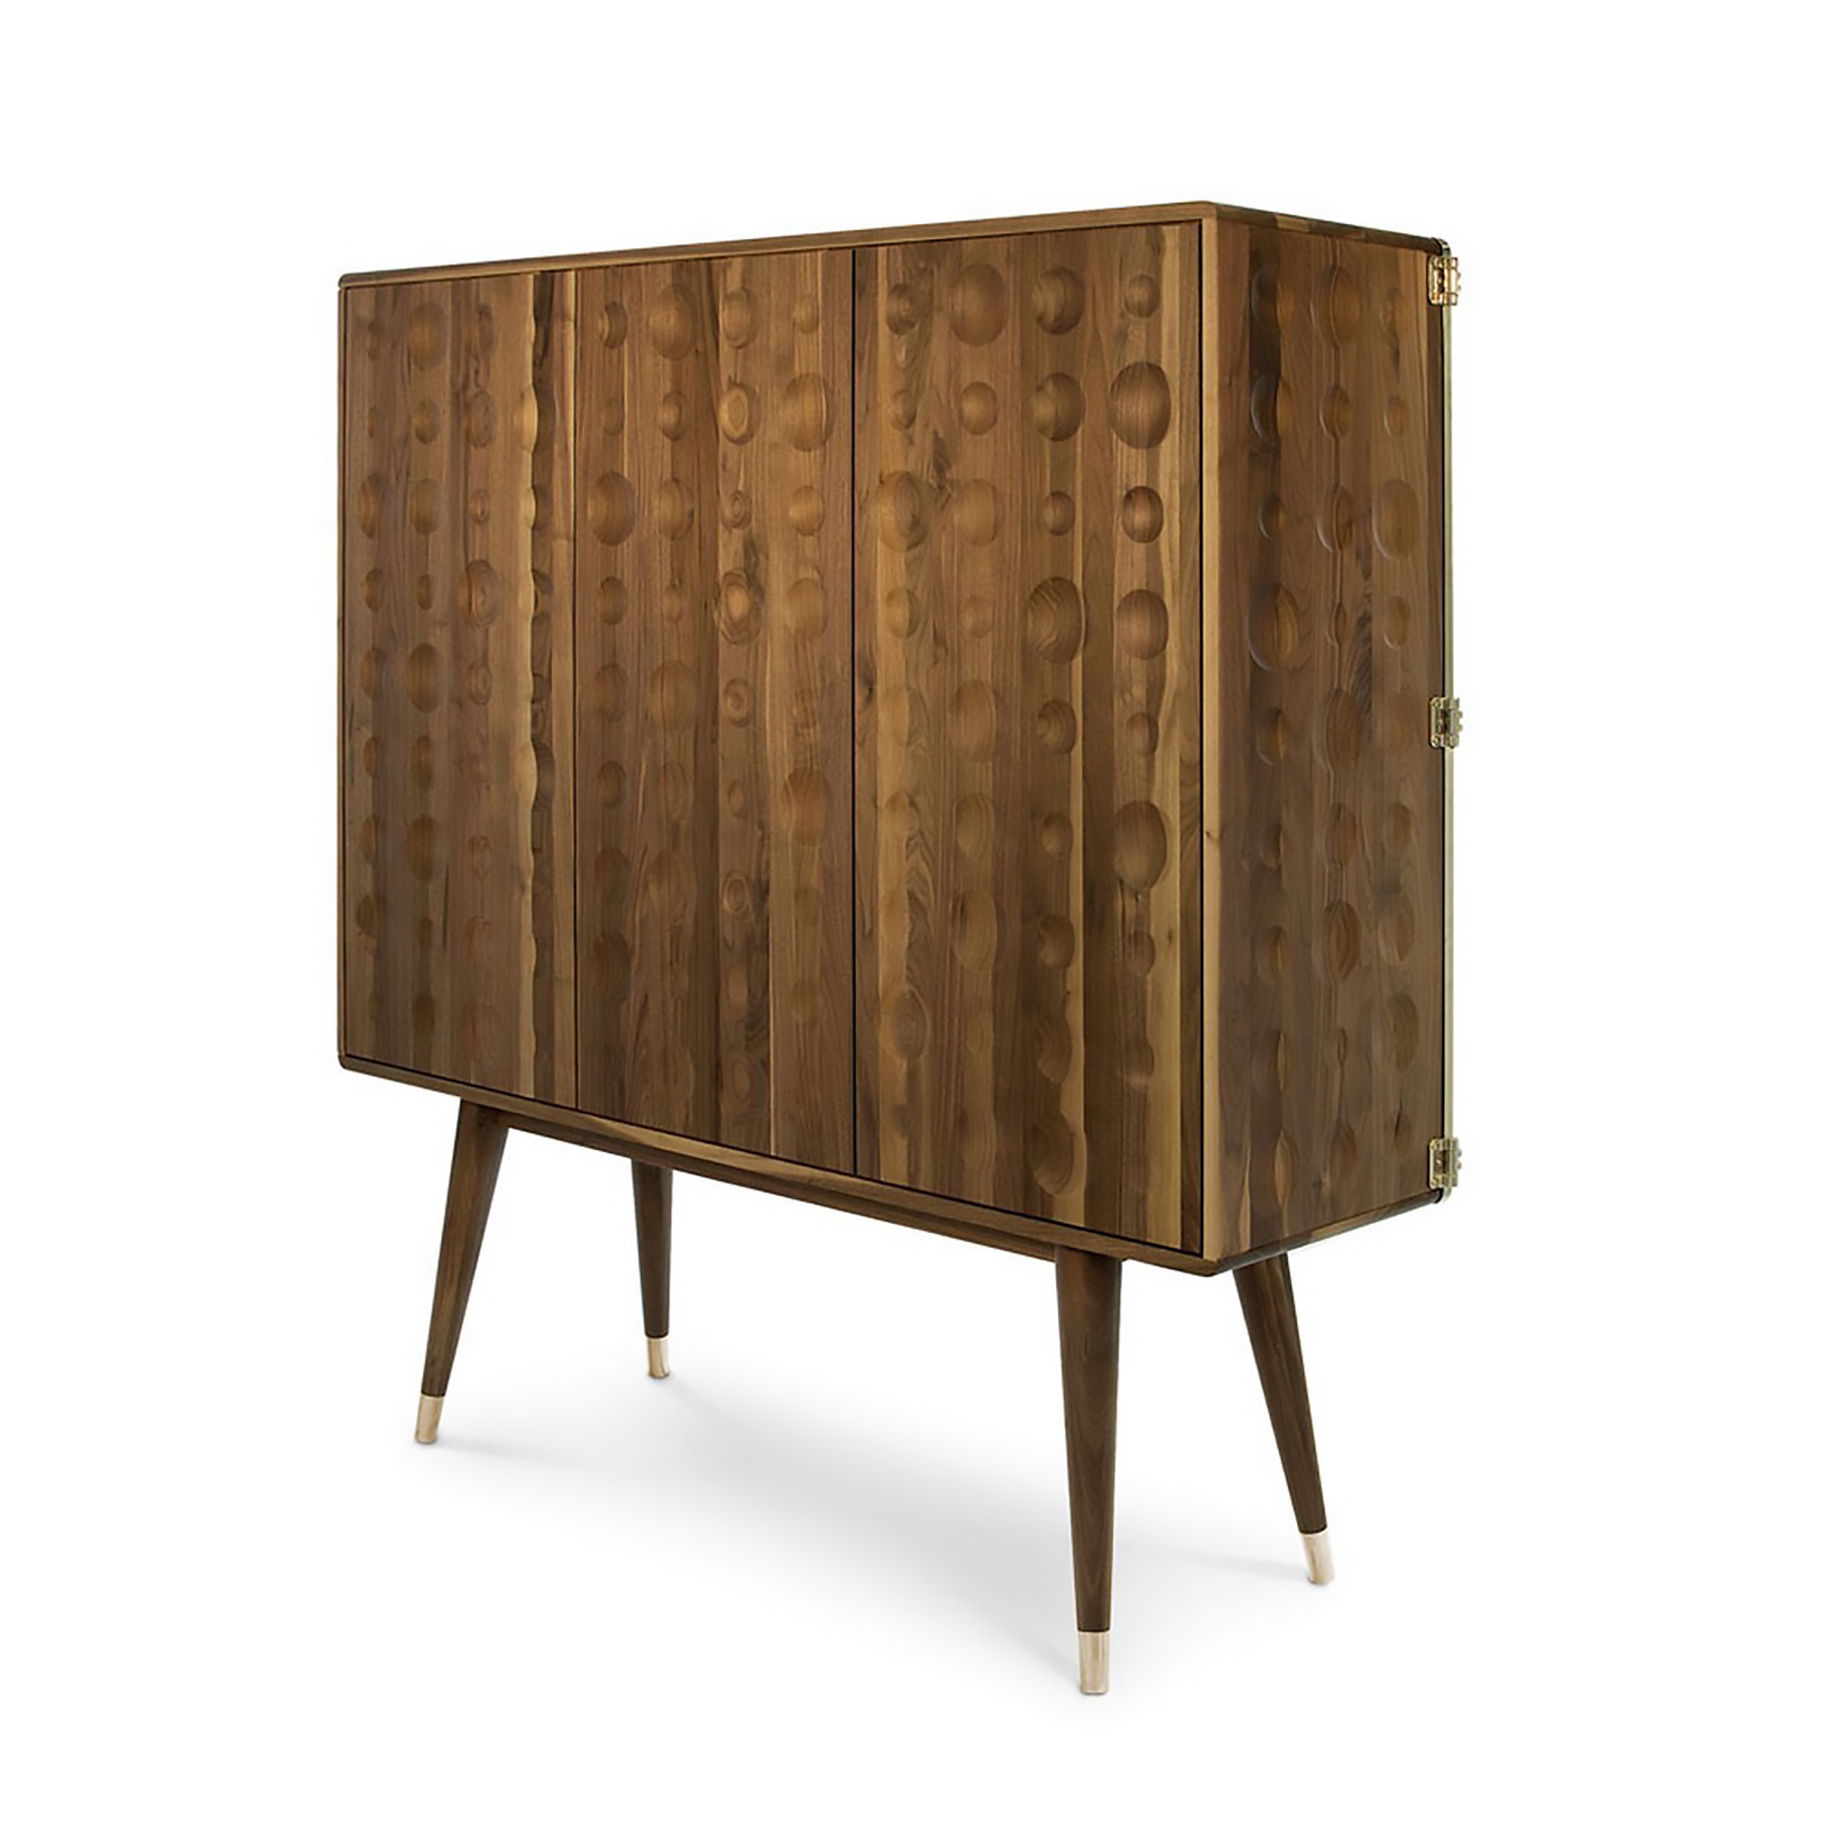 MONOCLES Cabinet - Essential Home - DelightFULL Modern Retro Design